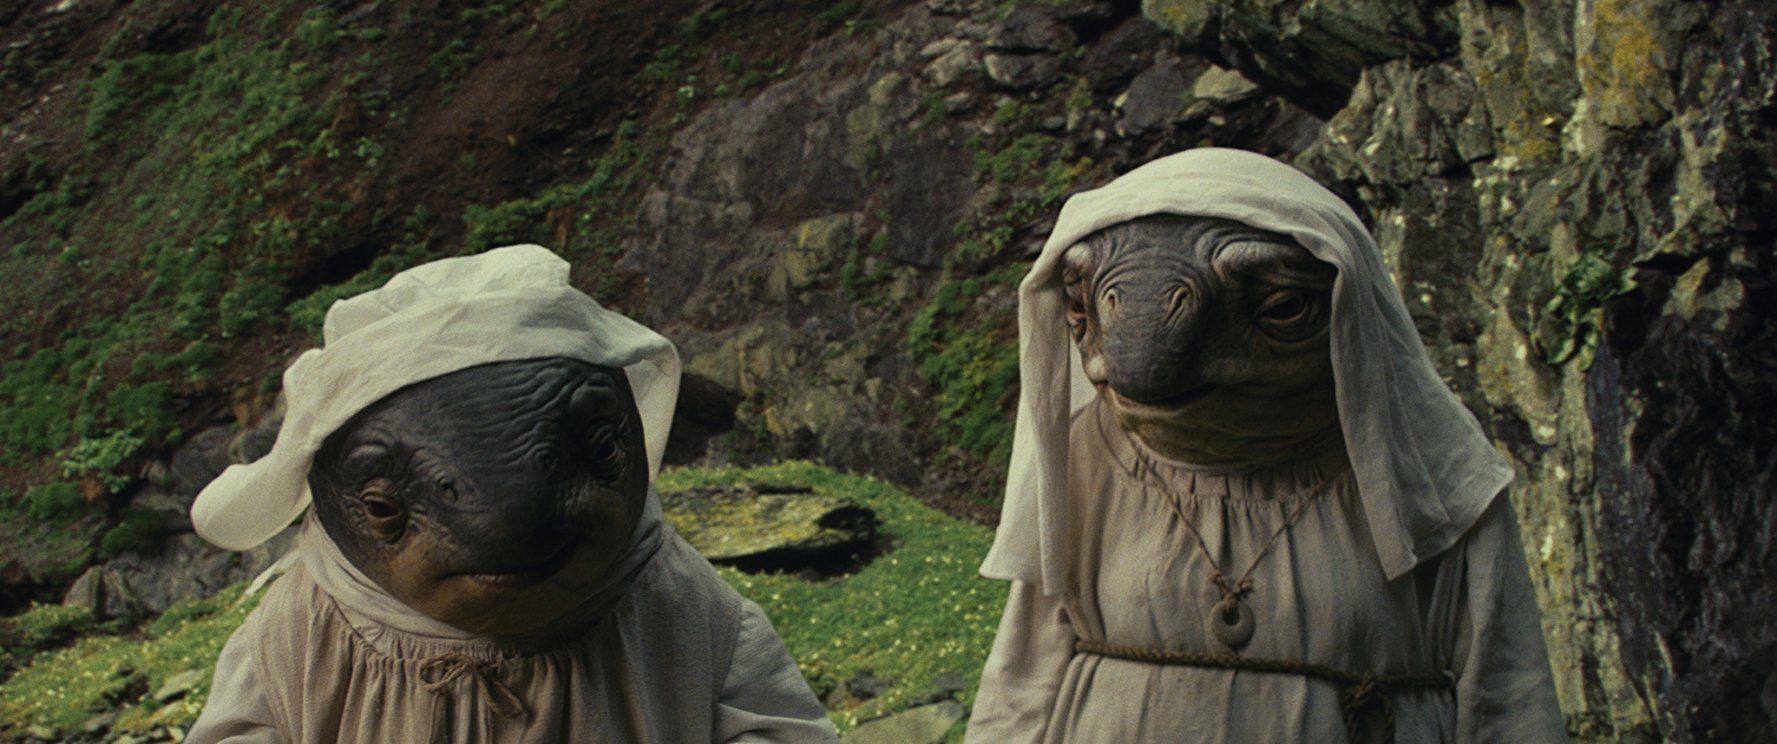 Star Wars: The Last Jedi alien nuns